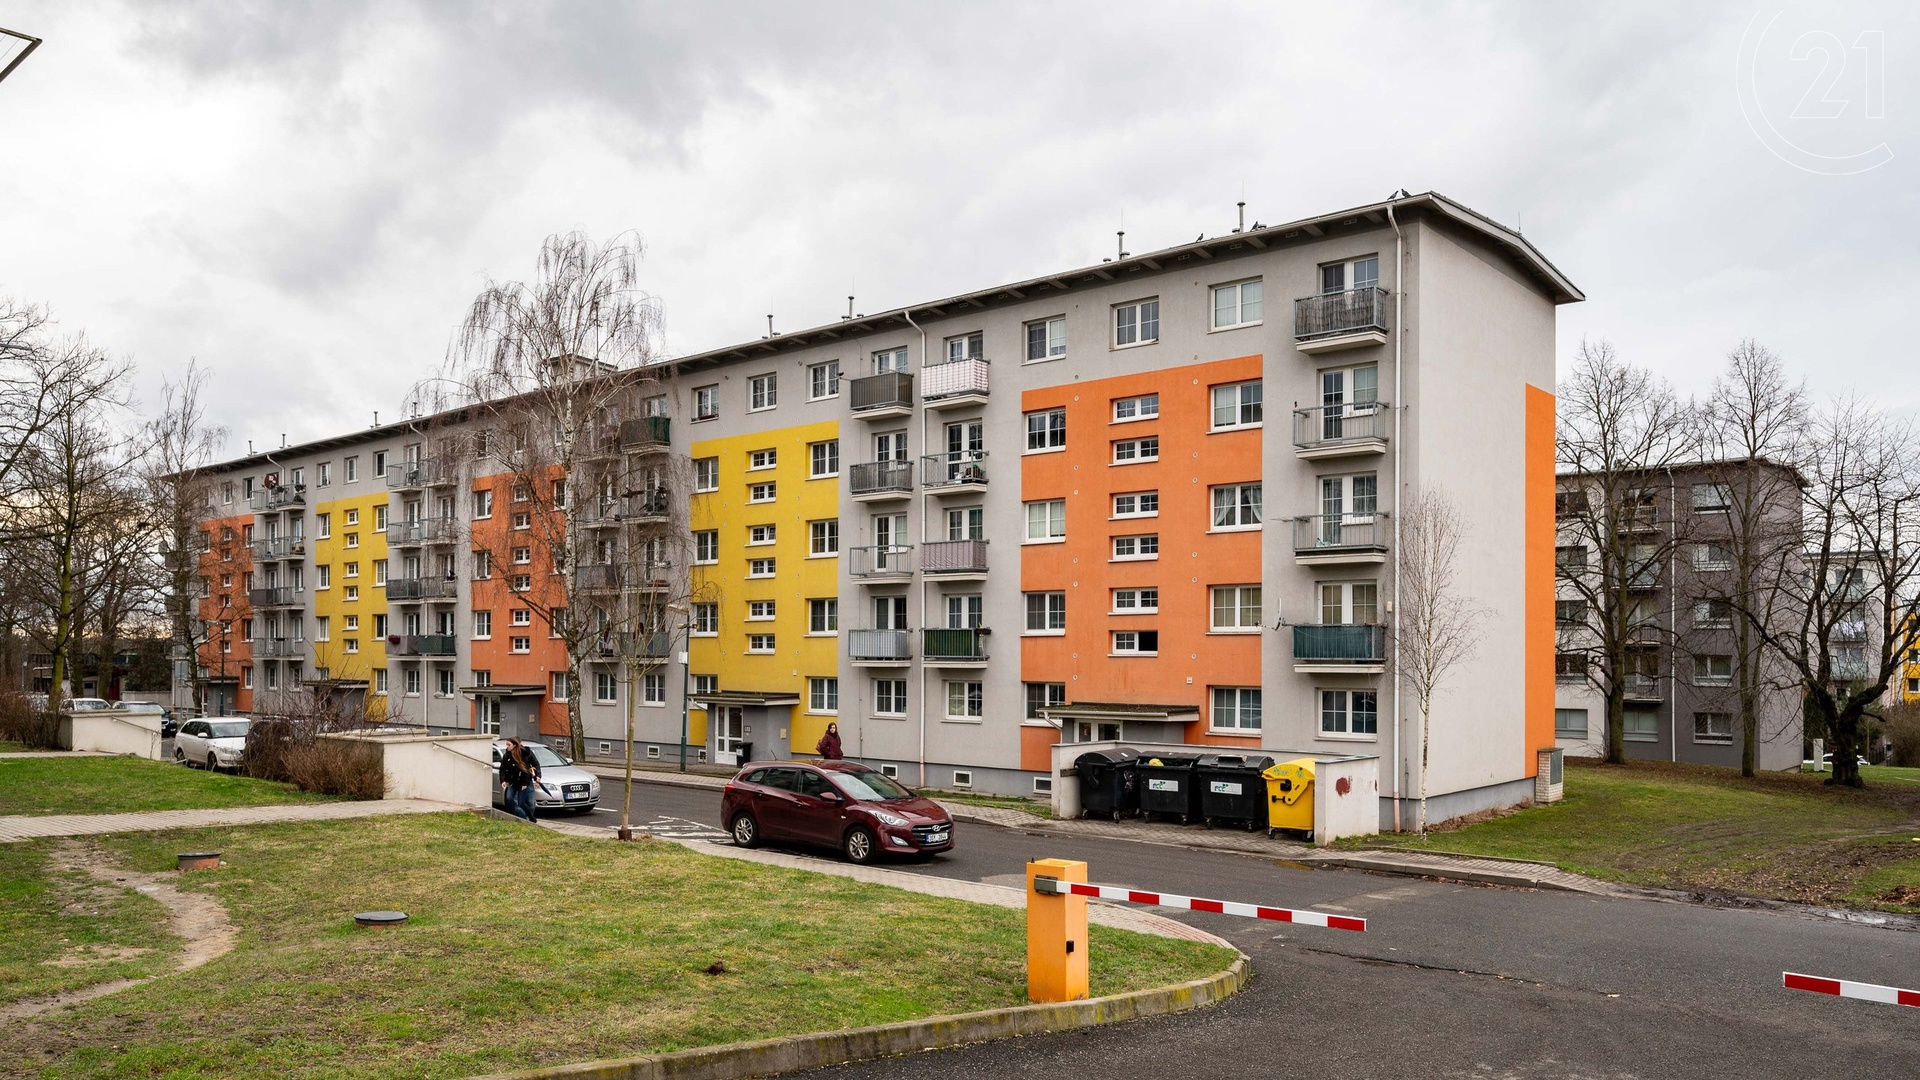 Prodej družstevního bytu 2+kk, 46 m², 2x balkón, sklep a parkovací stání na hlídaném parkovišti - Milovice - Mladá